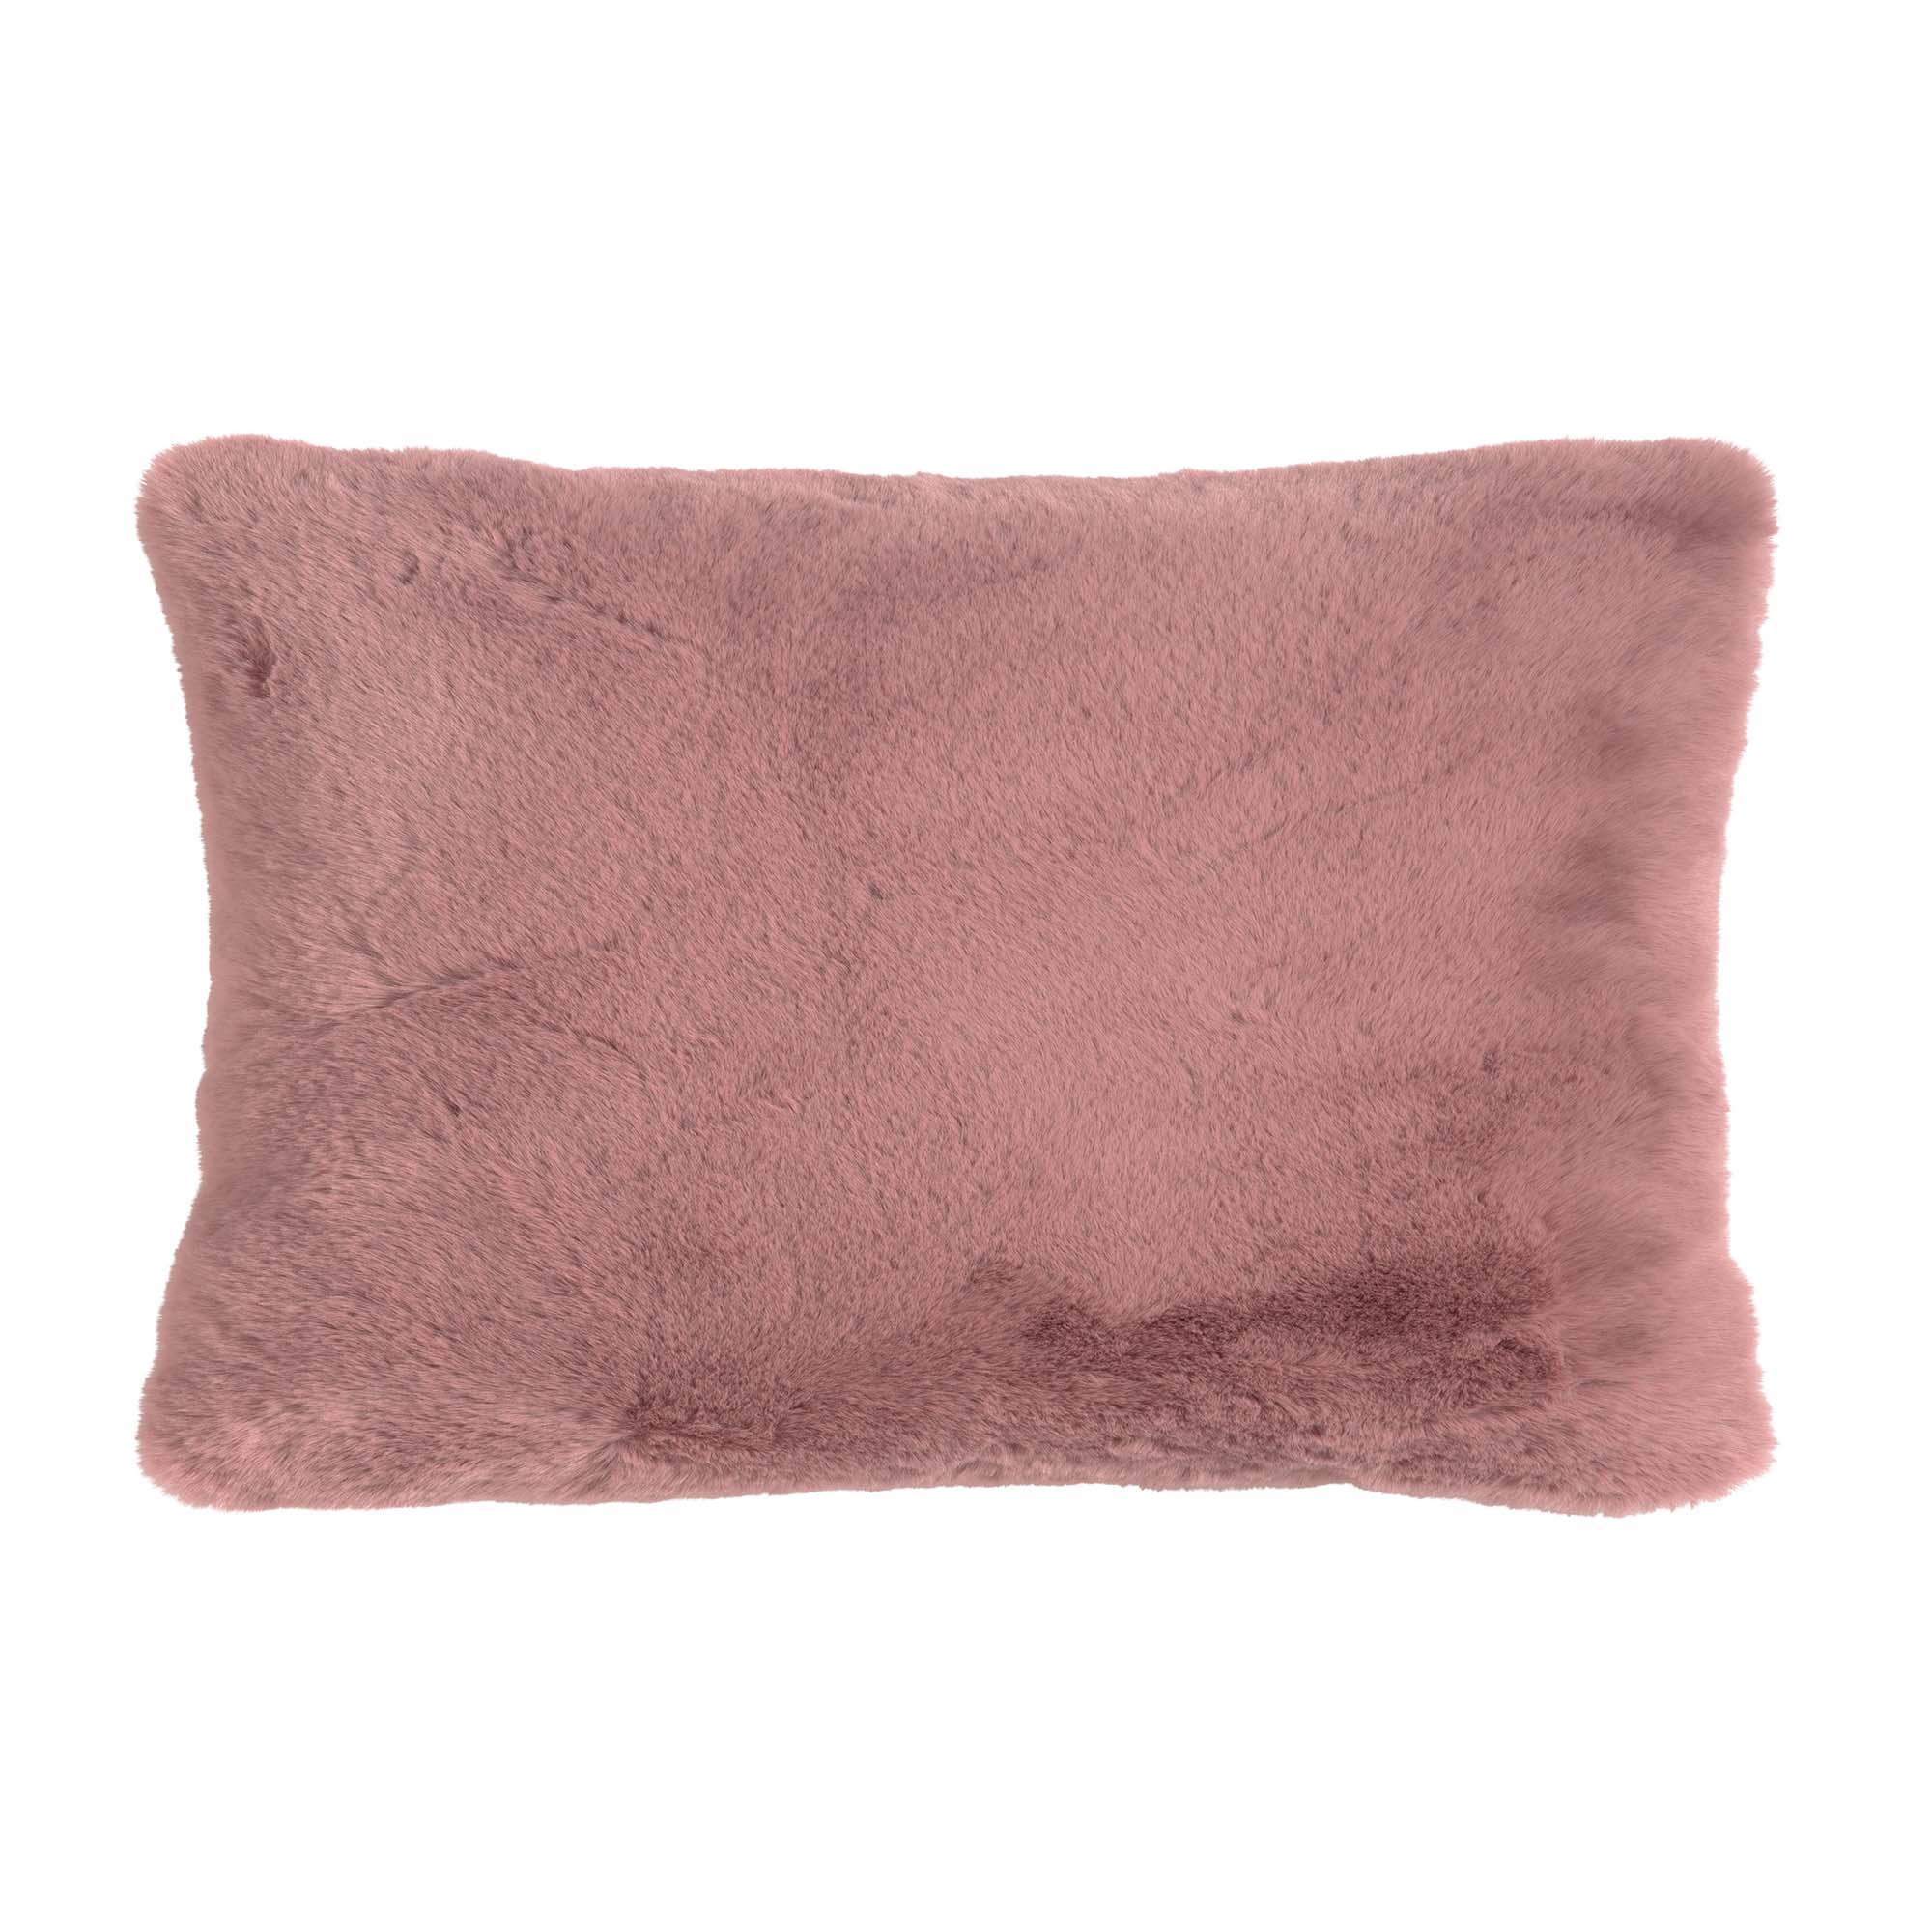 ZAYA - Kussenhoes 30x50 cm - bontlook - effen kleur - Pale Mauve - roze